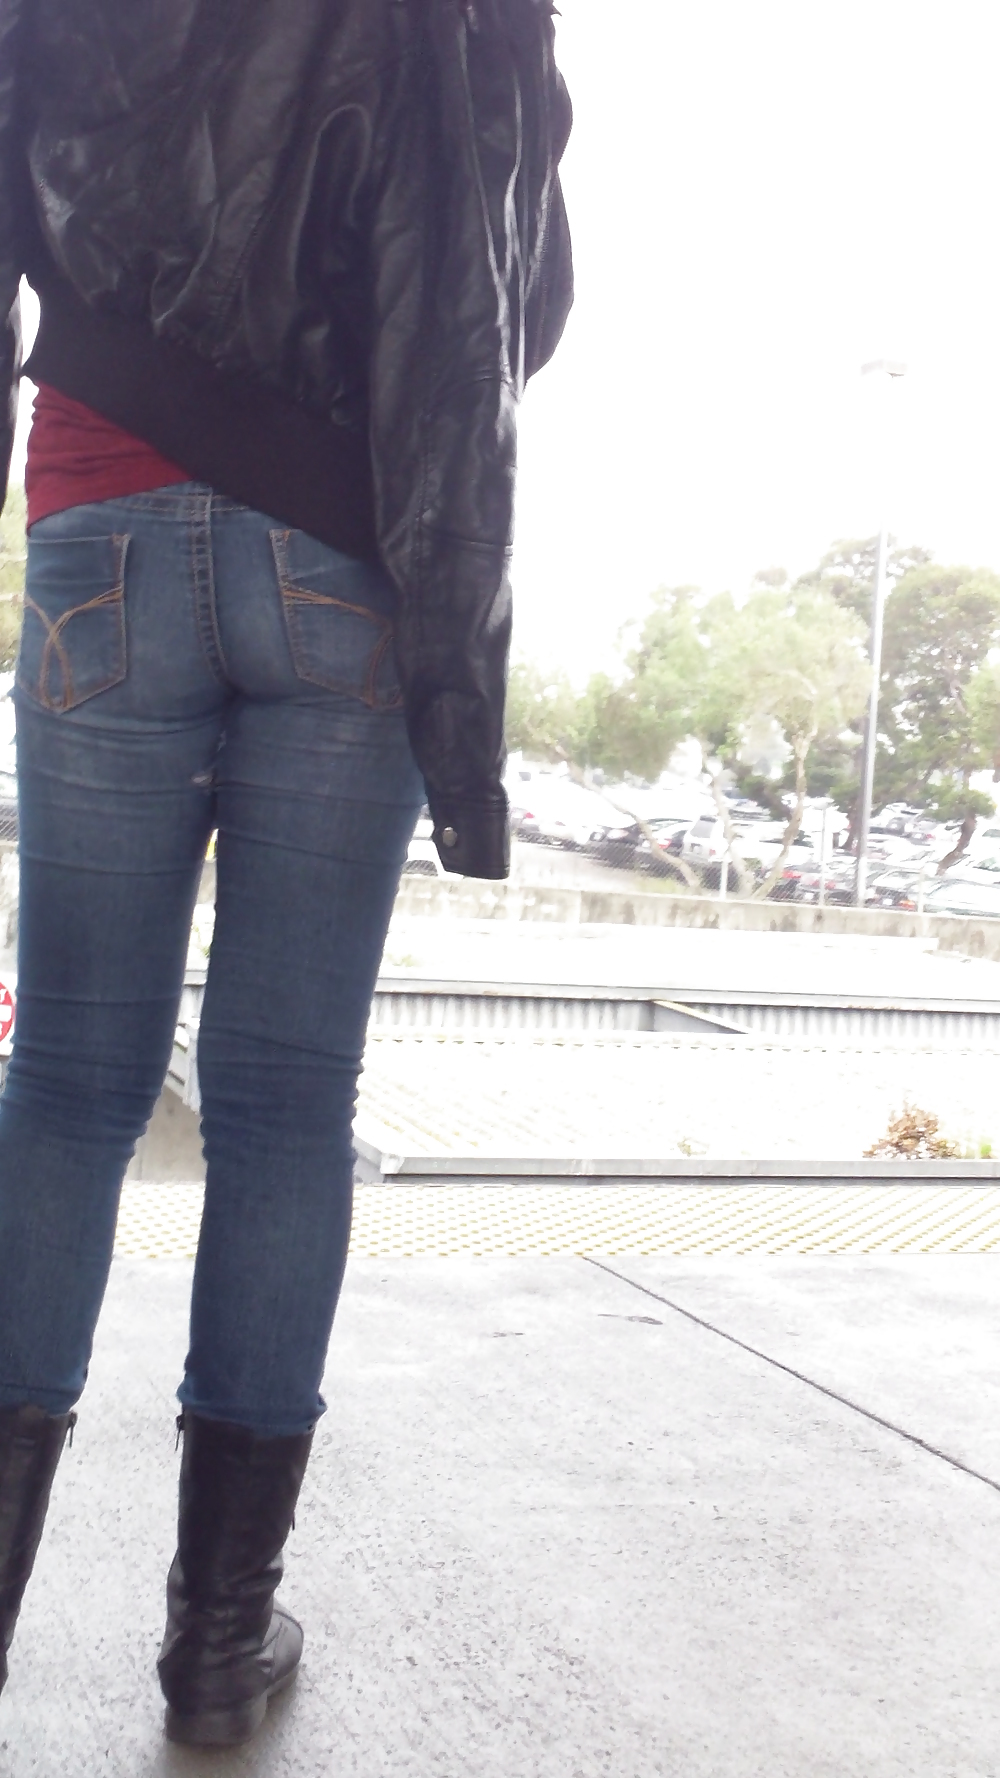 Sexy tight teen ass & butt in blue jeans #23556840